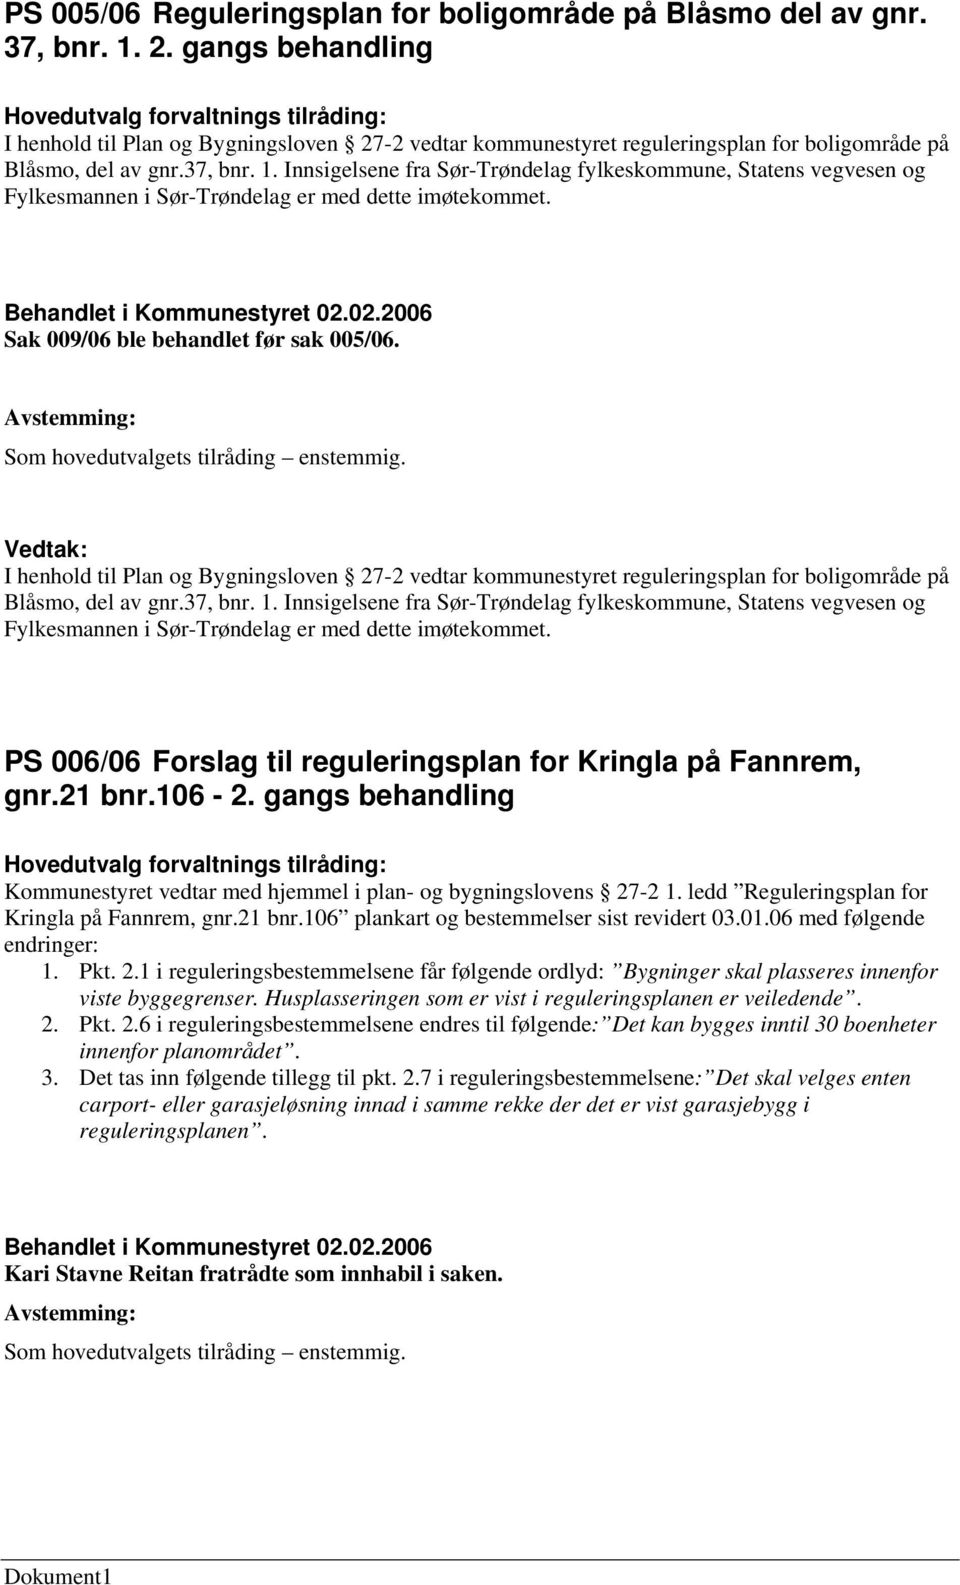 Innsigelsene fra Sør-Trøndelag fylkeskommune, Statens vegvesen og Fylkesmannen i Sør-Trøndelag er med dette imøtekommet. Sak 009/06 ble behandlet før sak 005/06.